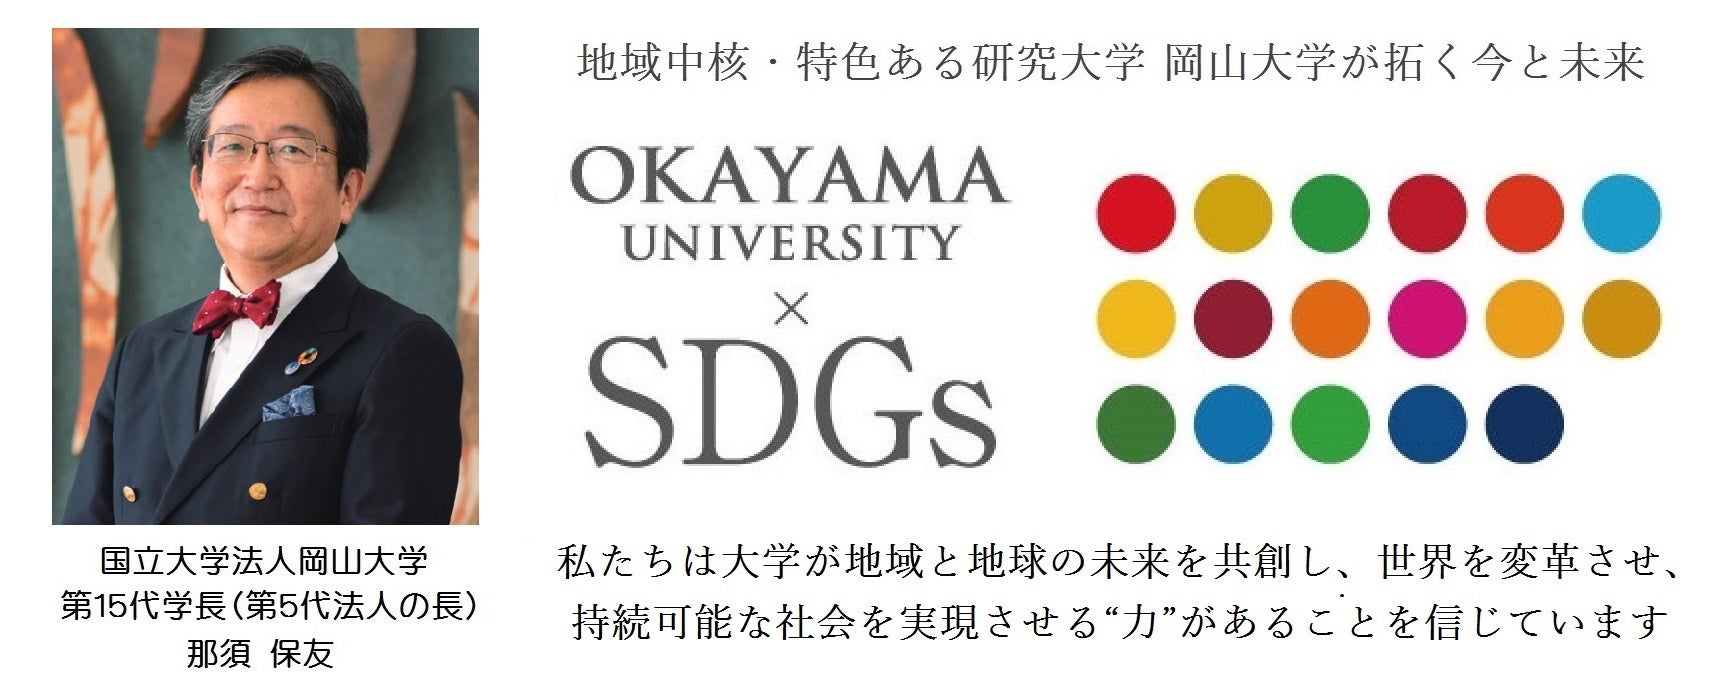 【岡山大学】岡山大学工学部が入学前スクーリングを開催しました